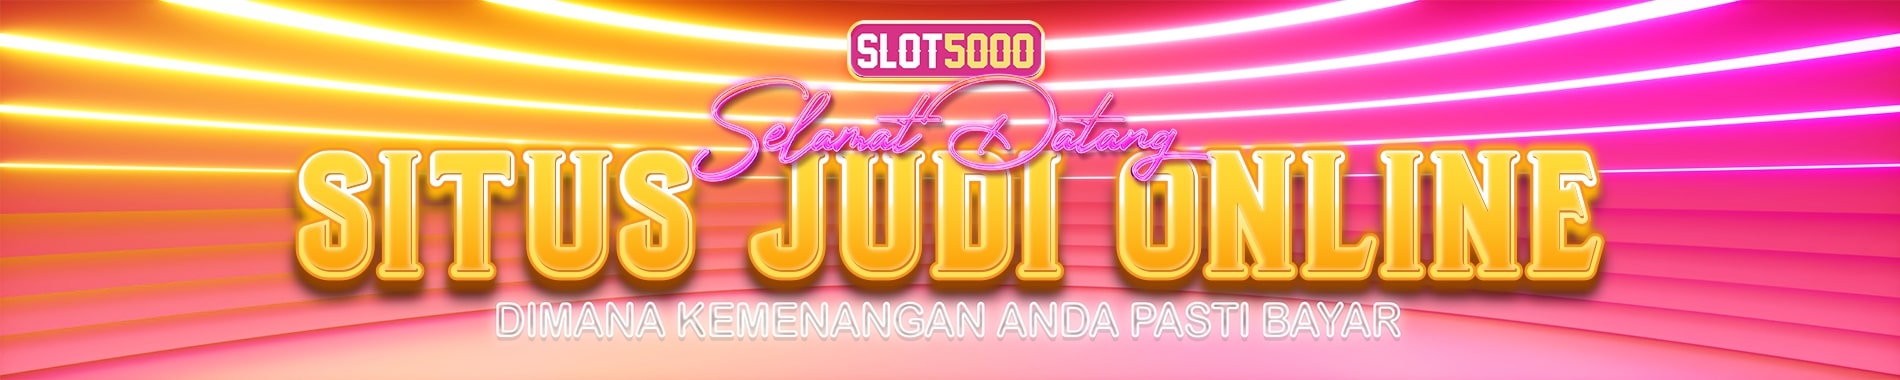 SITUS JUDI ONLINE TERPERCAYA - SLOT5000